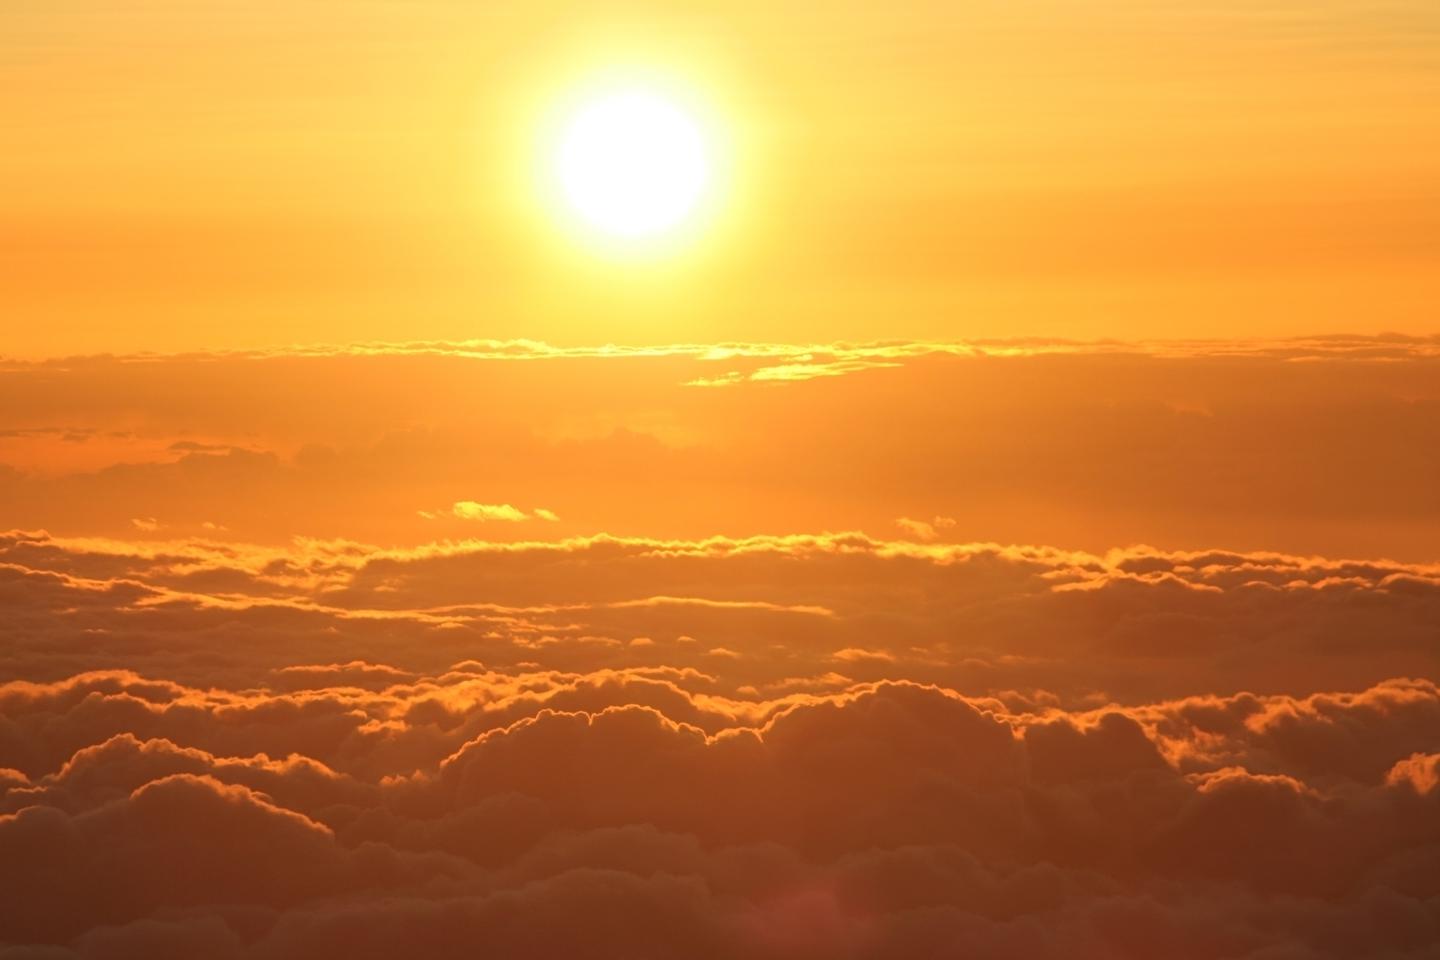 Sunrise or Sunset at Mauna Kea